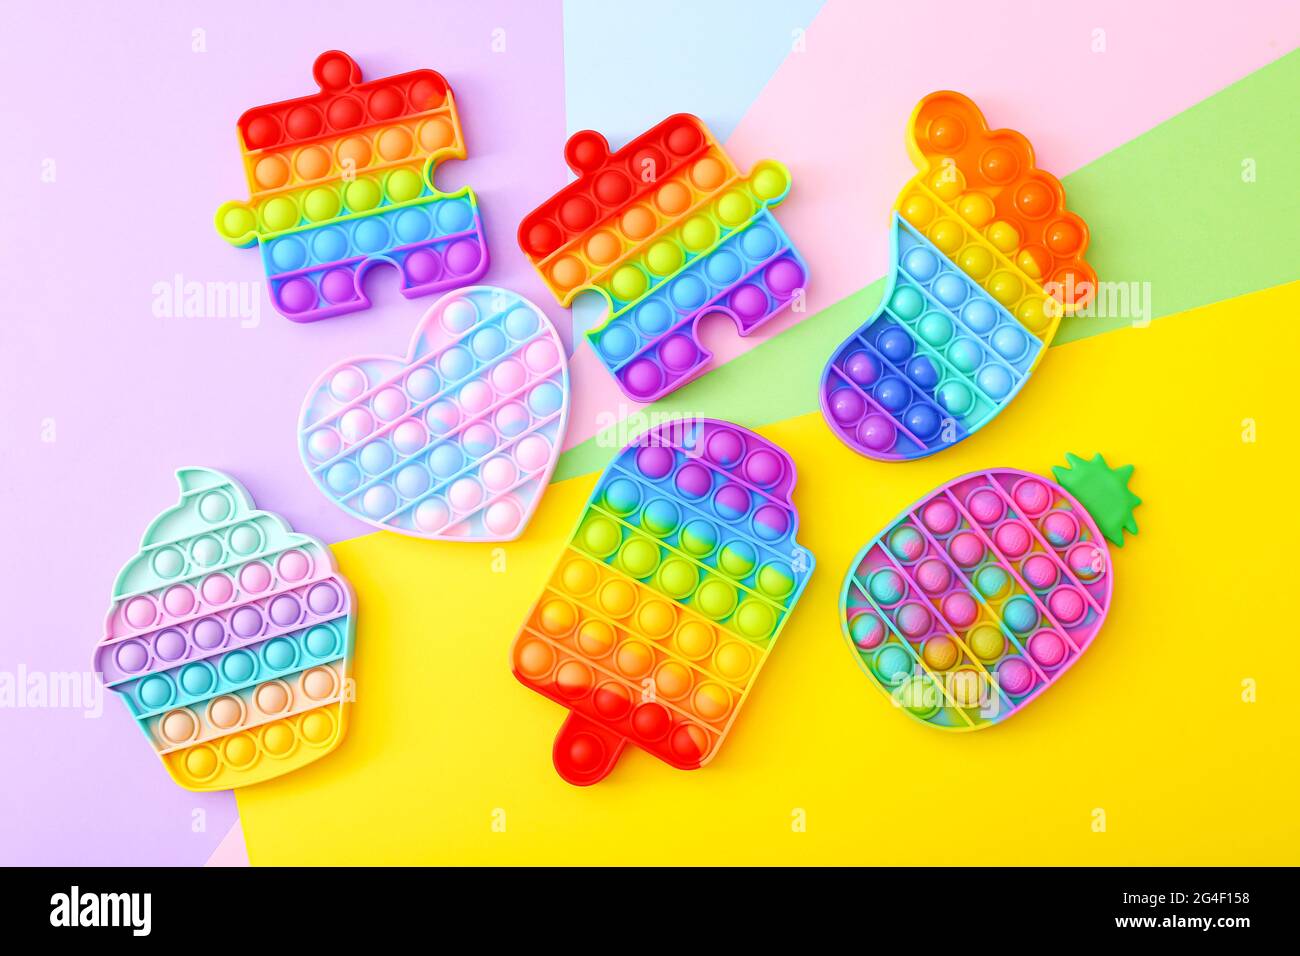 Farbiger kreis anti-stress-spielzeug pop it spielzeug für zappeln  entspannung farbiger runder anti-stress-popit